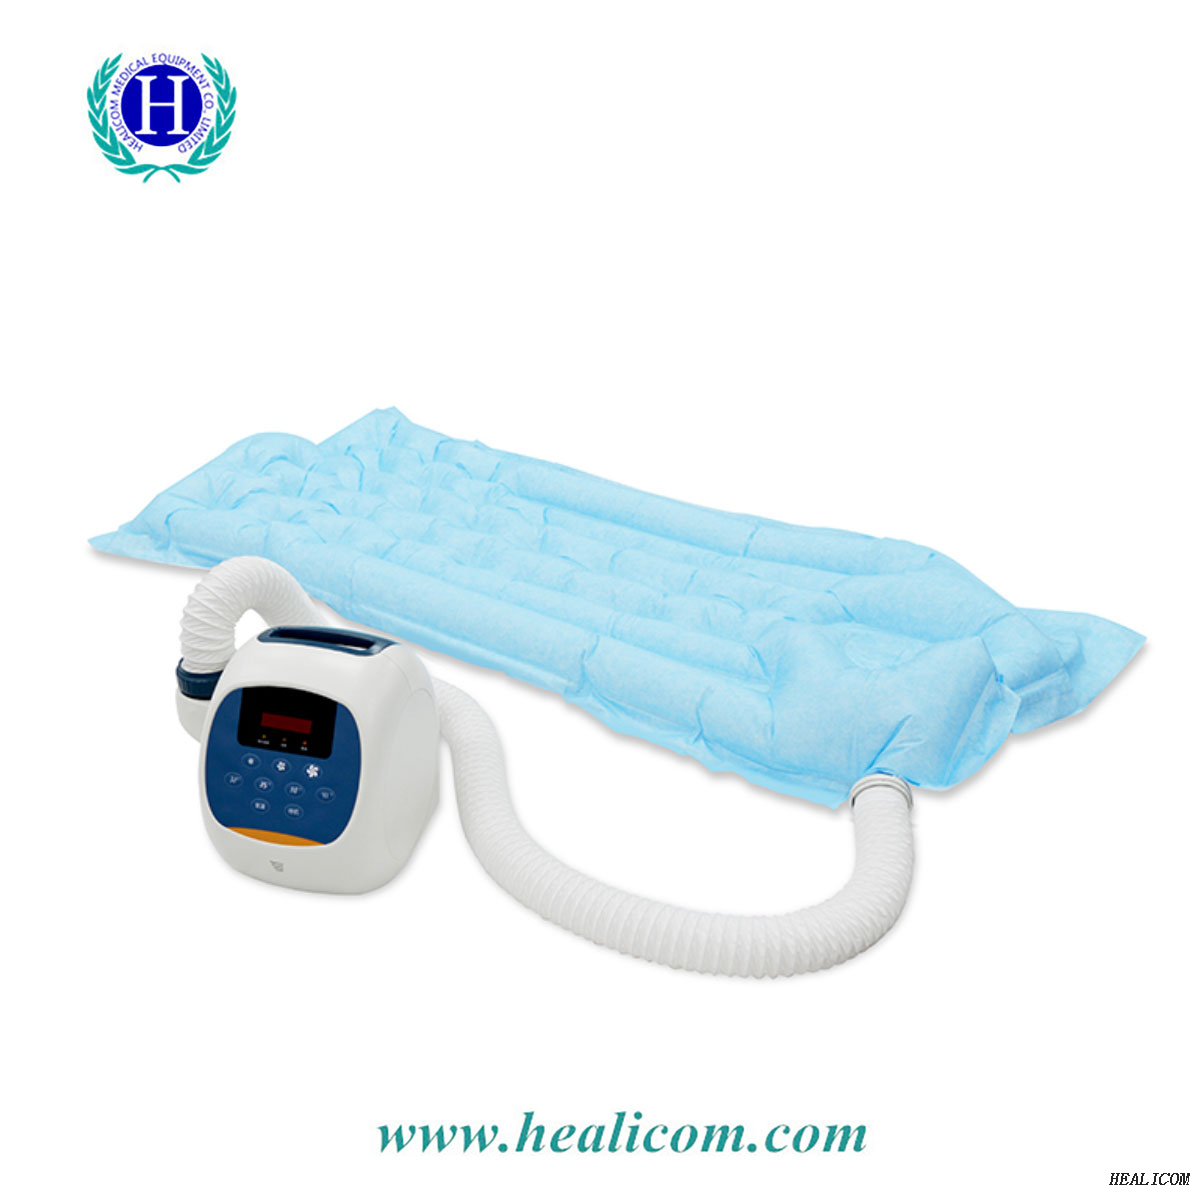 Couvertures chauffantes pour patients chauffants Medical HC-200 Couverture chauffante pour patients